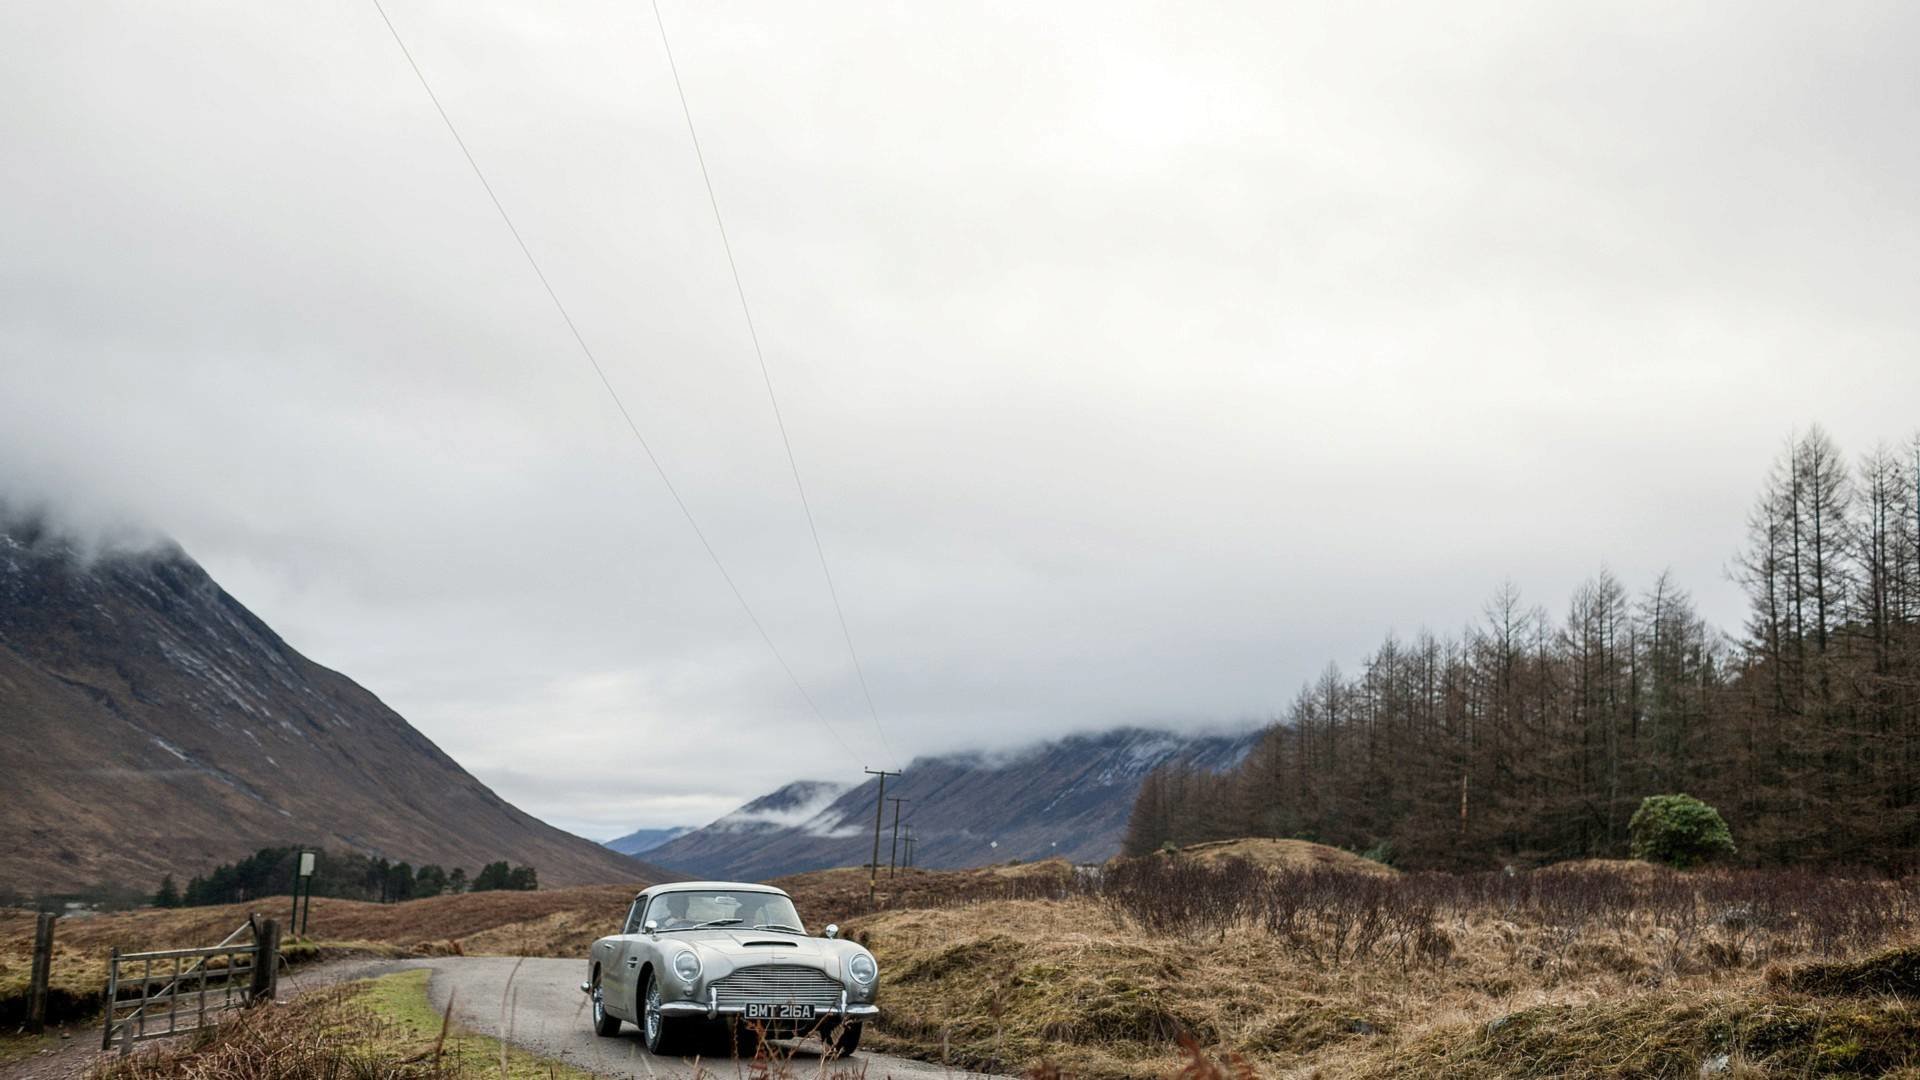 Aston Martin chystá obnovenou výrobu 25 modelů DB5 s výbavou ve stylu Jamese Bonda